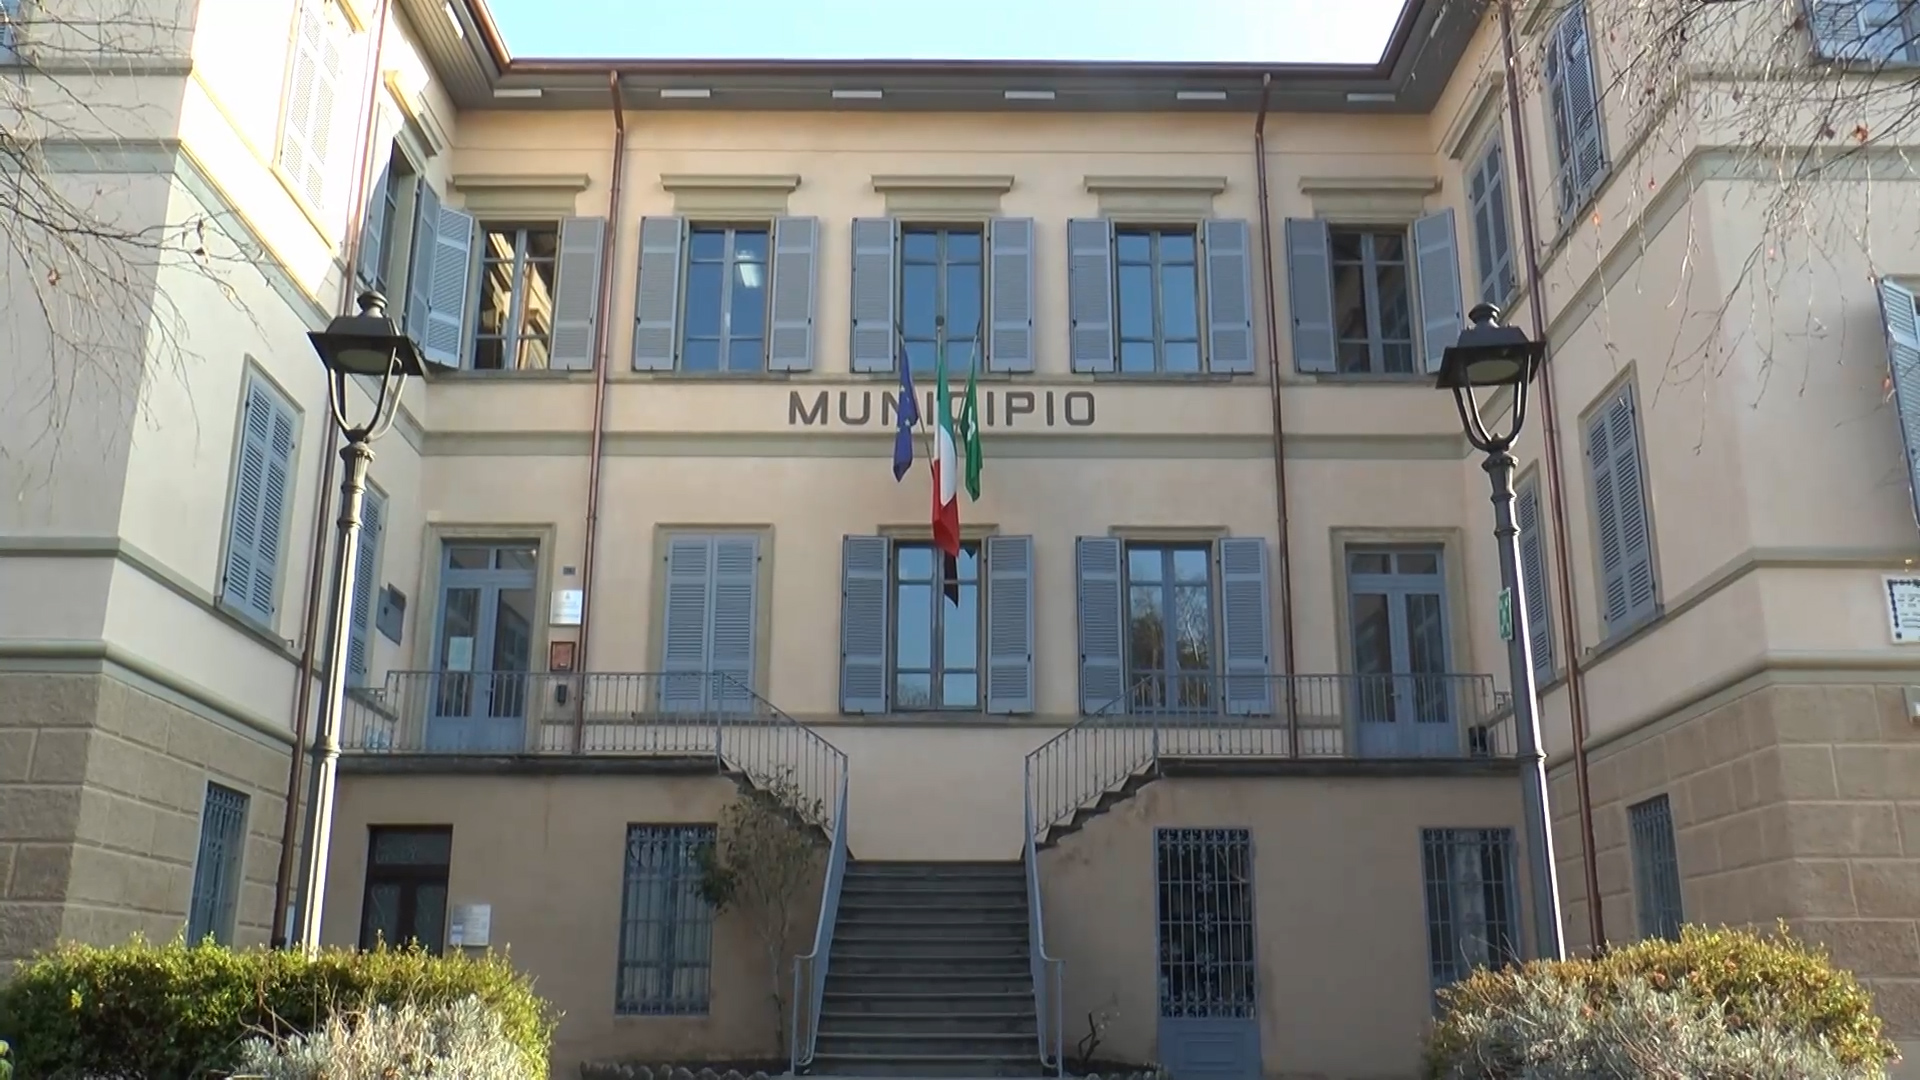 Sale Marasino, opposizione con Fratelli d'Italia contro Marisa Zanotti